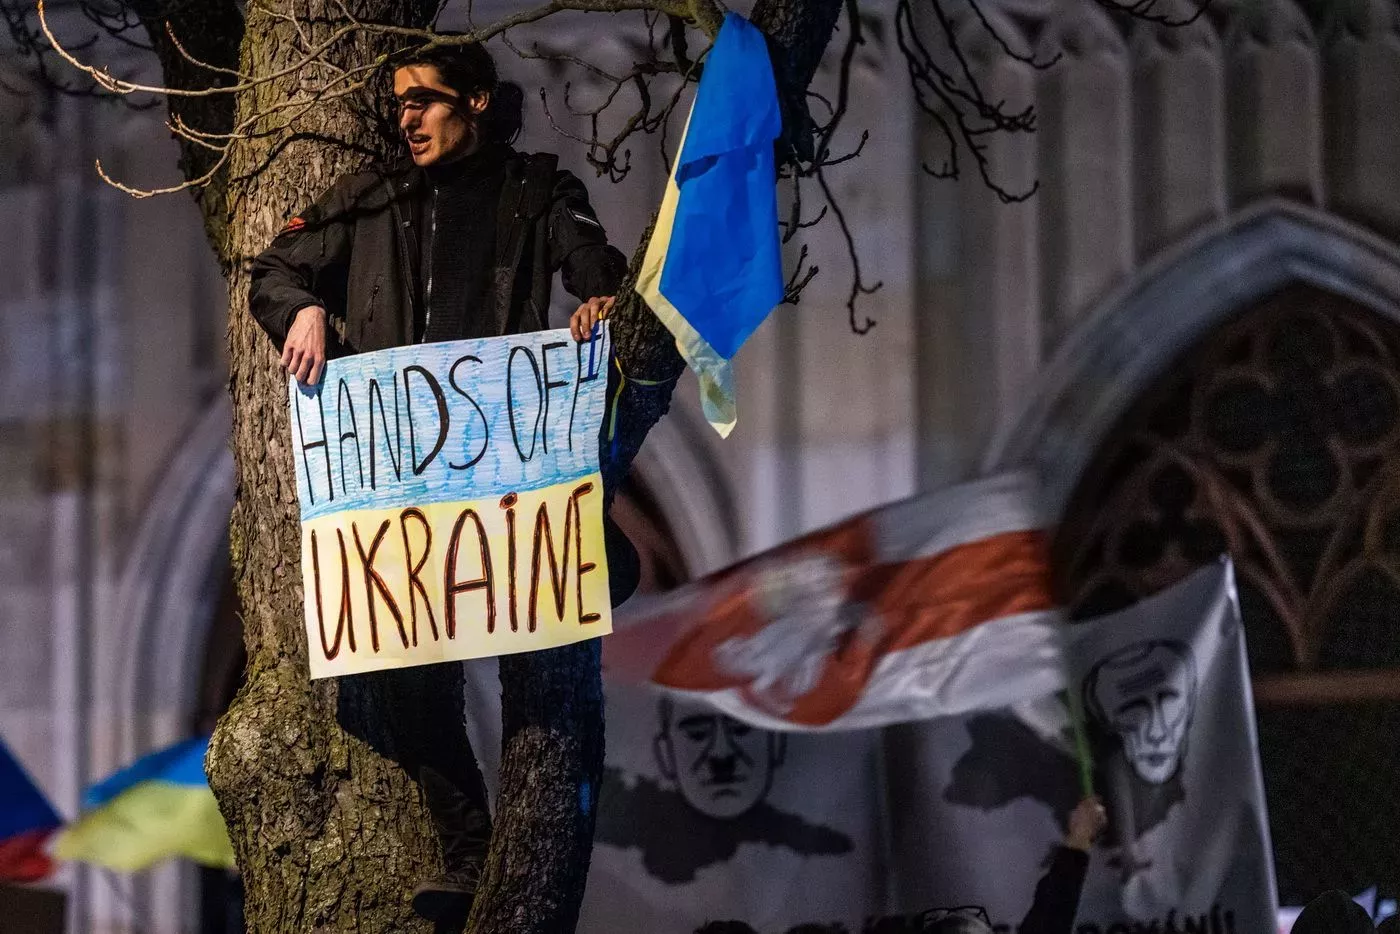 Demonstrace proti ruskému vpádu na Ukrajinu